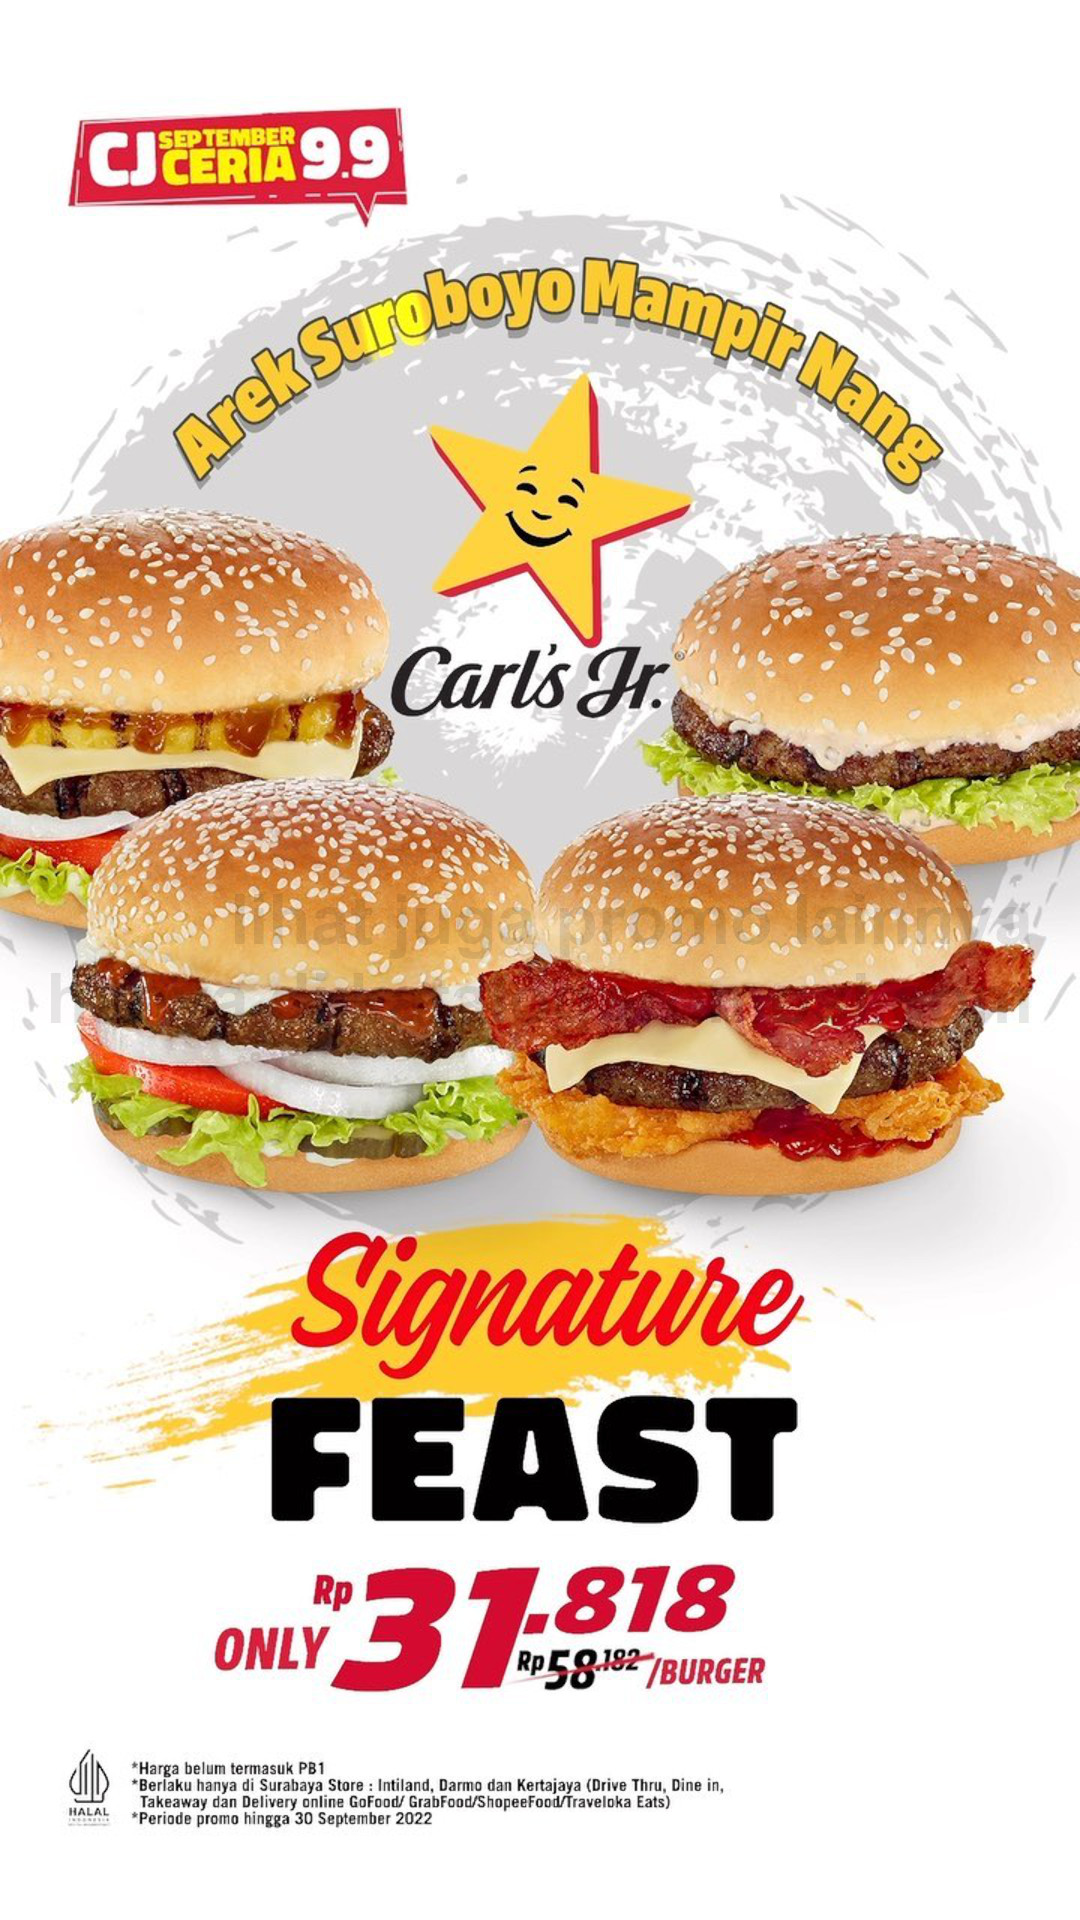 Promo CARLS Jr SIGNATURE FEAST - Harga Spesial mulai Rp. 31.818 per burger